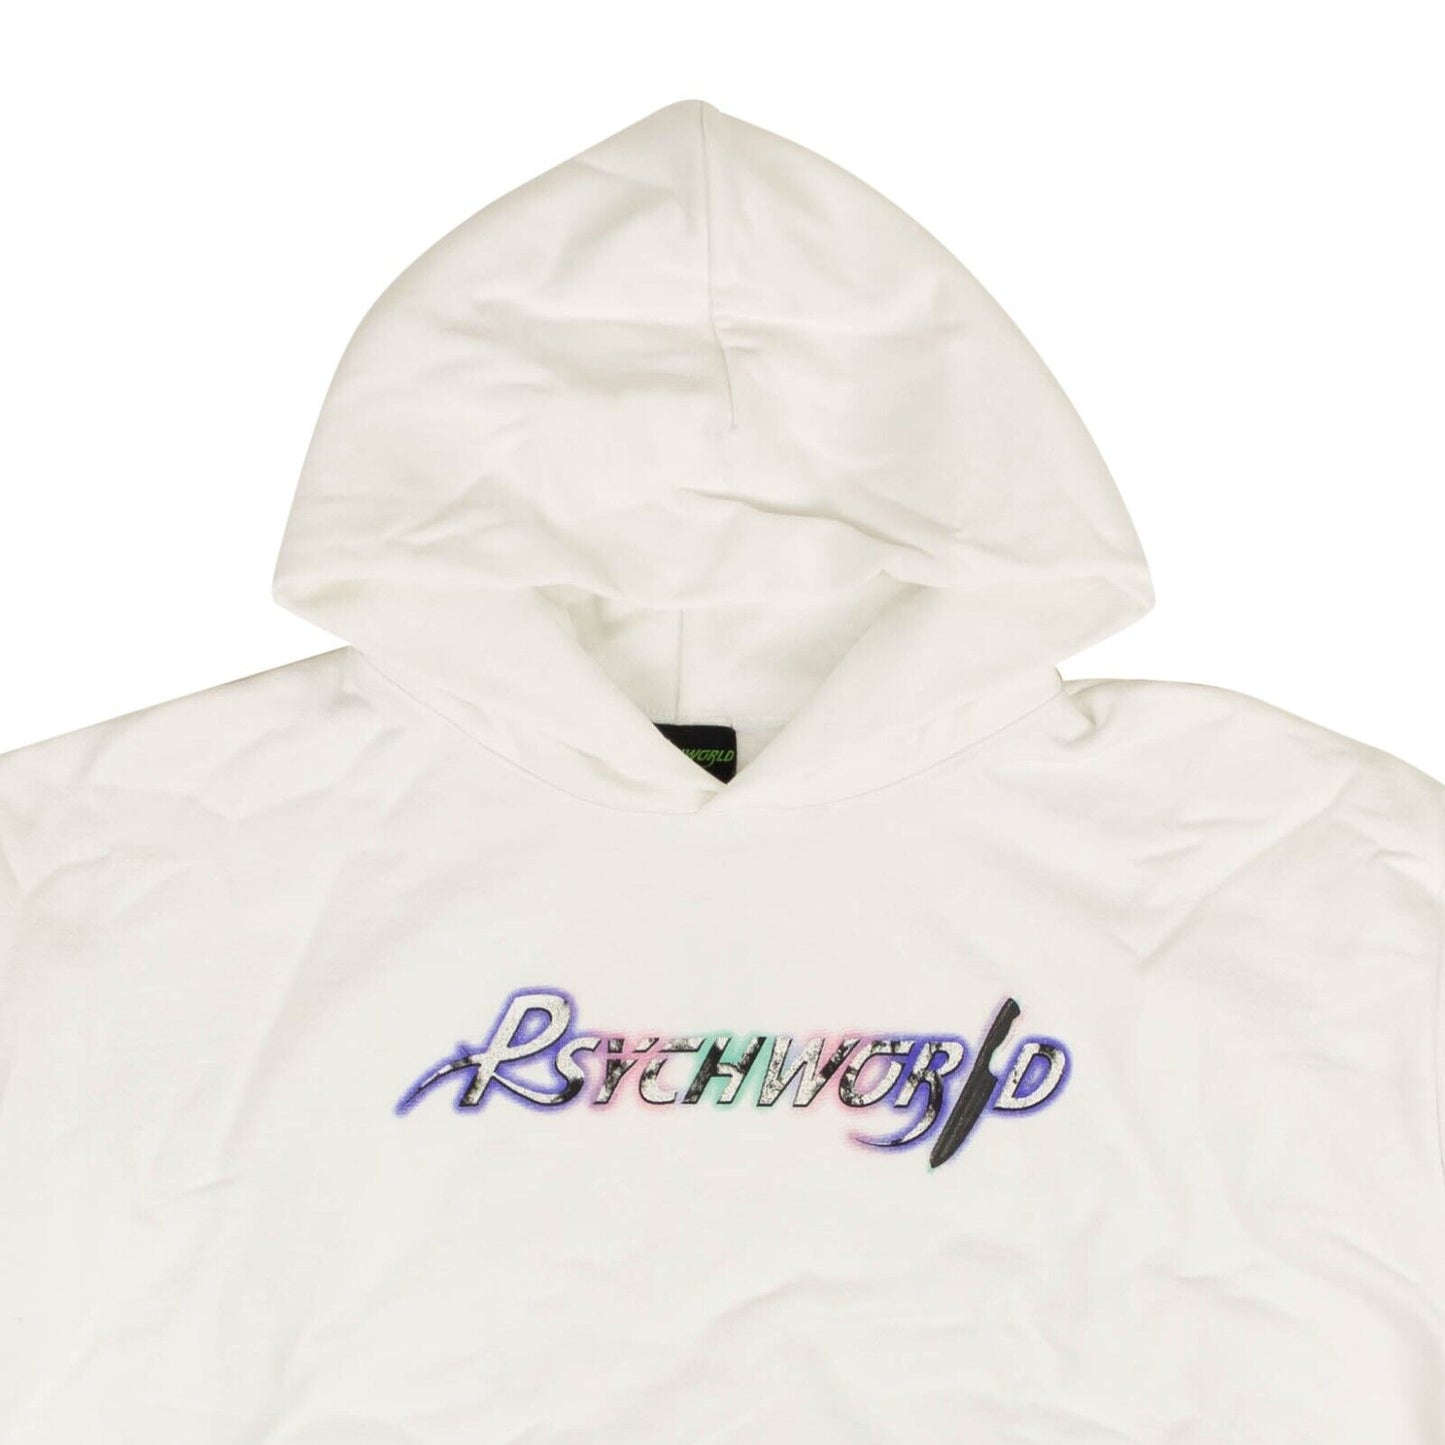 Psychworld Airbrush Logo Pullover Hoodie Sweatshirt - White